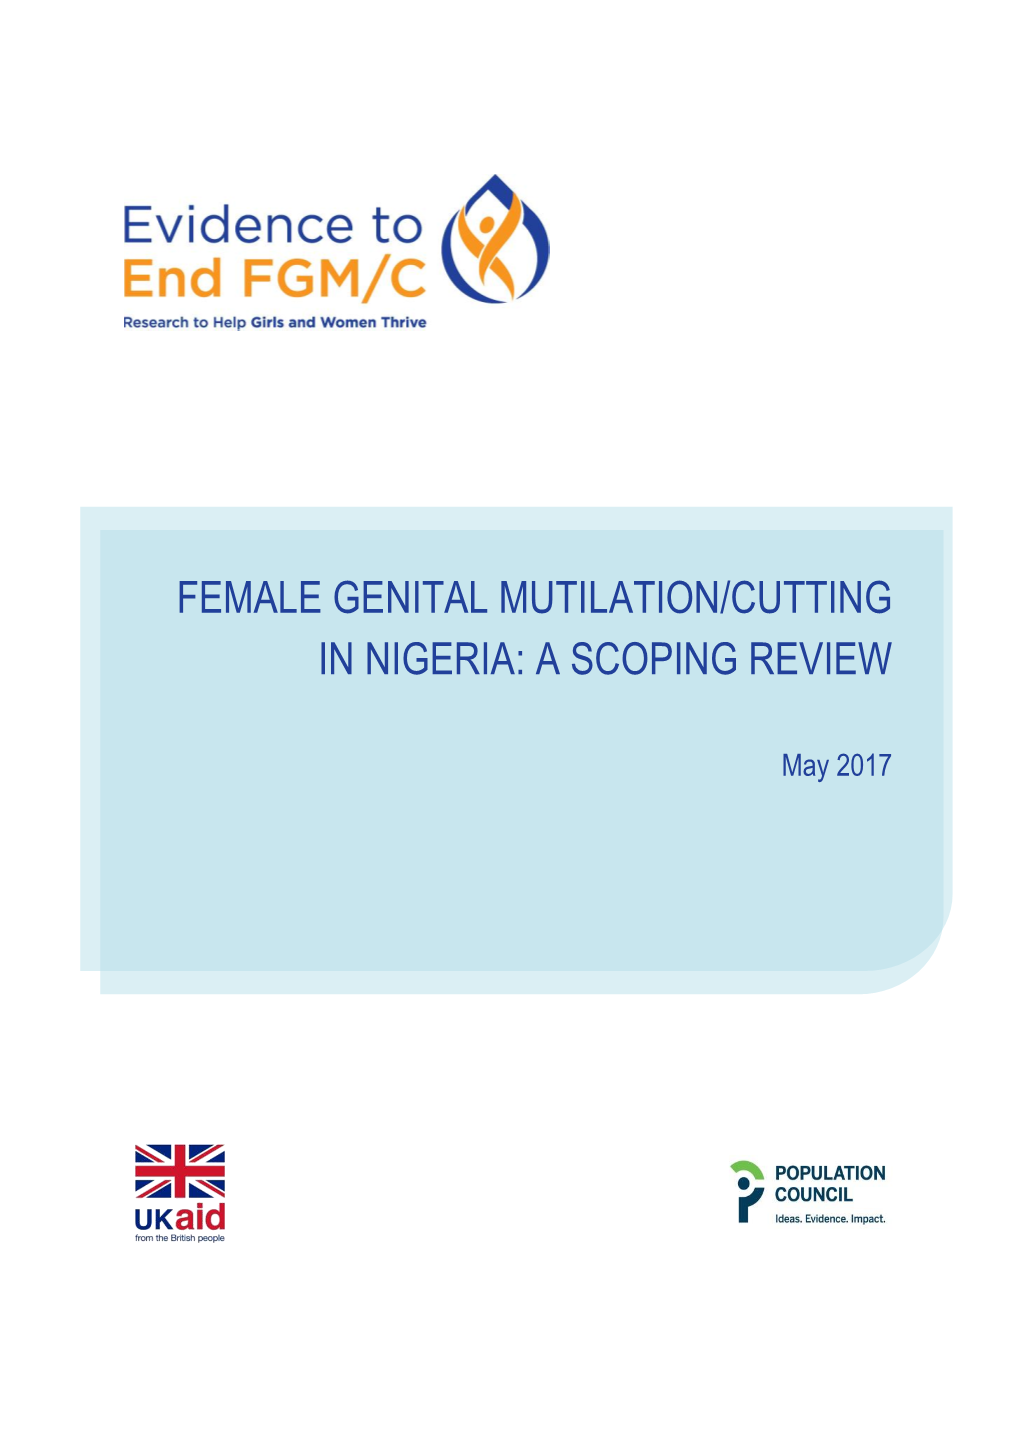 Female Genital Mutilation/Cutting in Nigeria: a Scoping Review